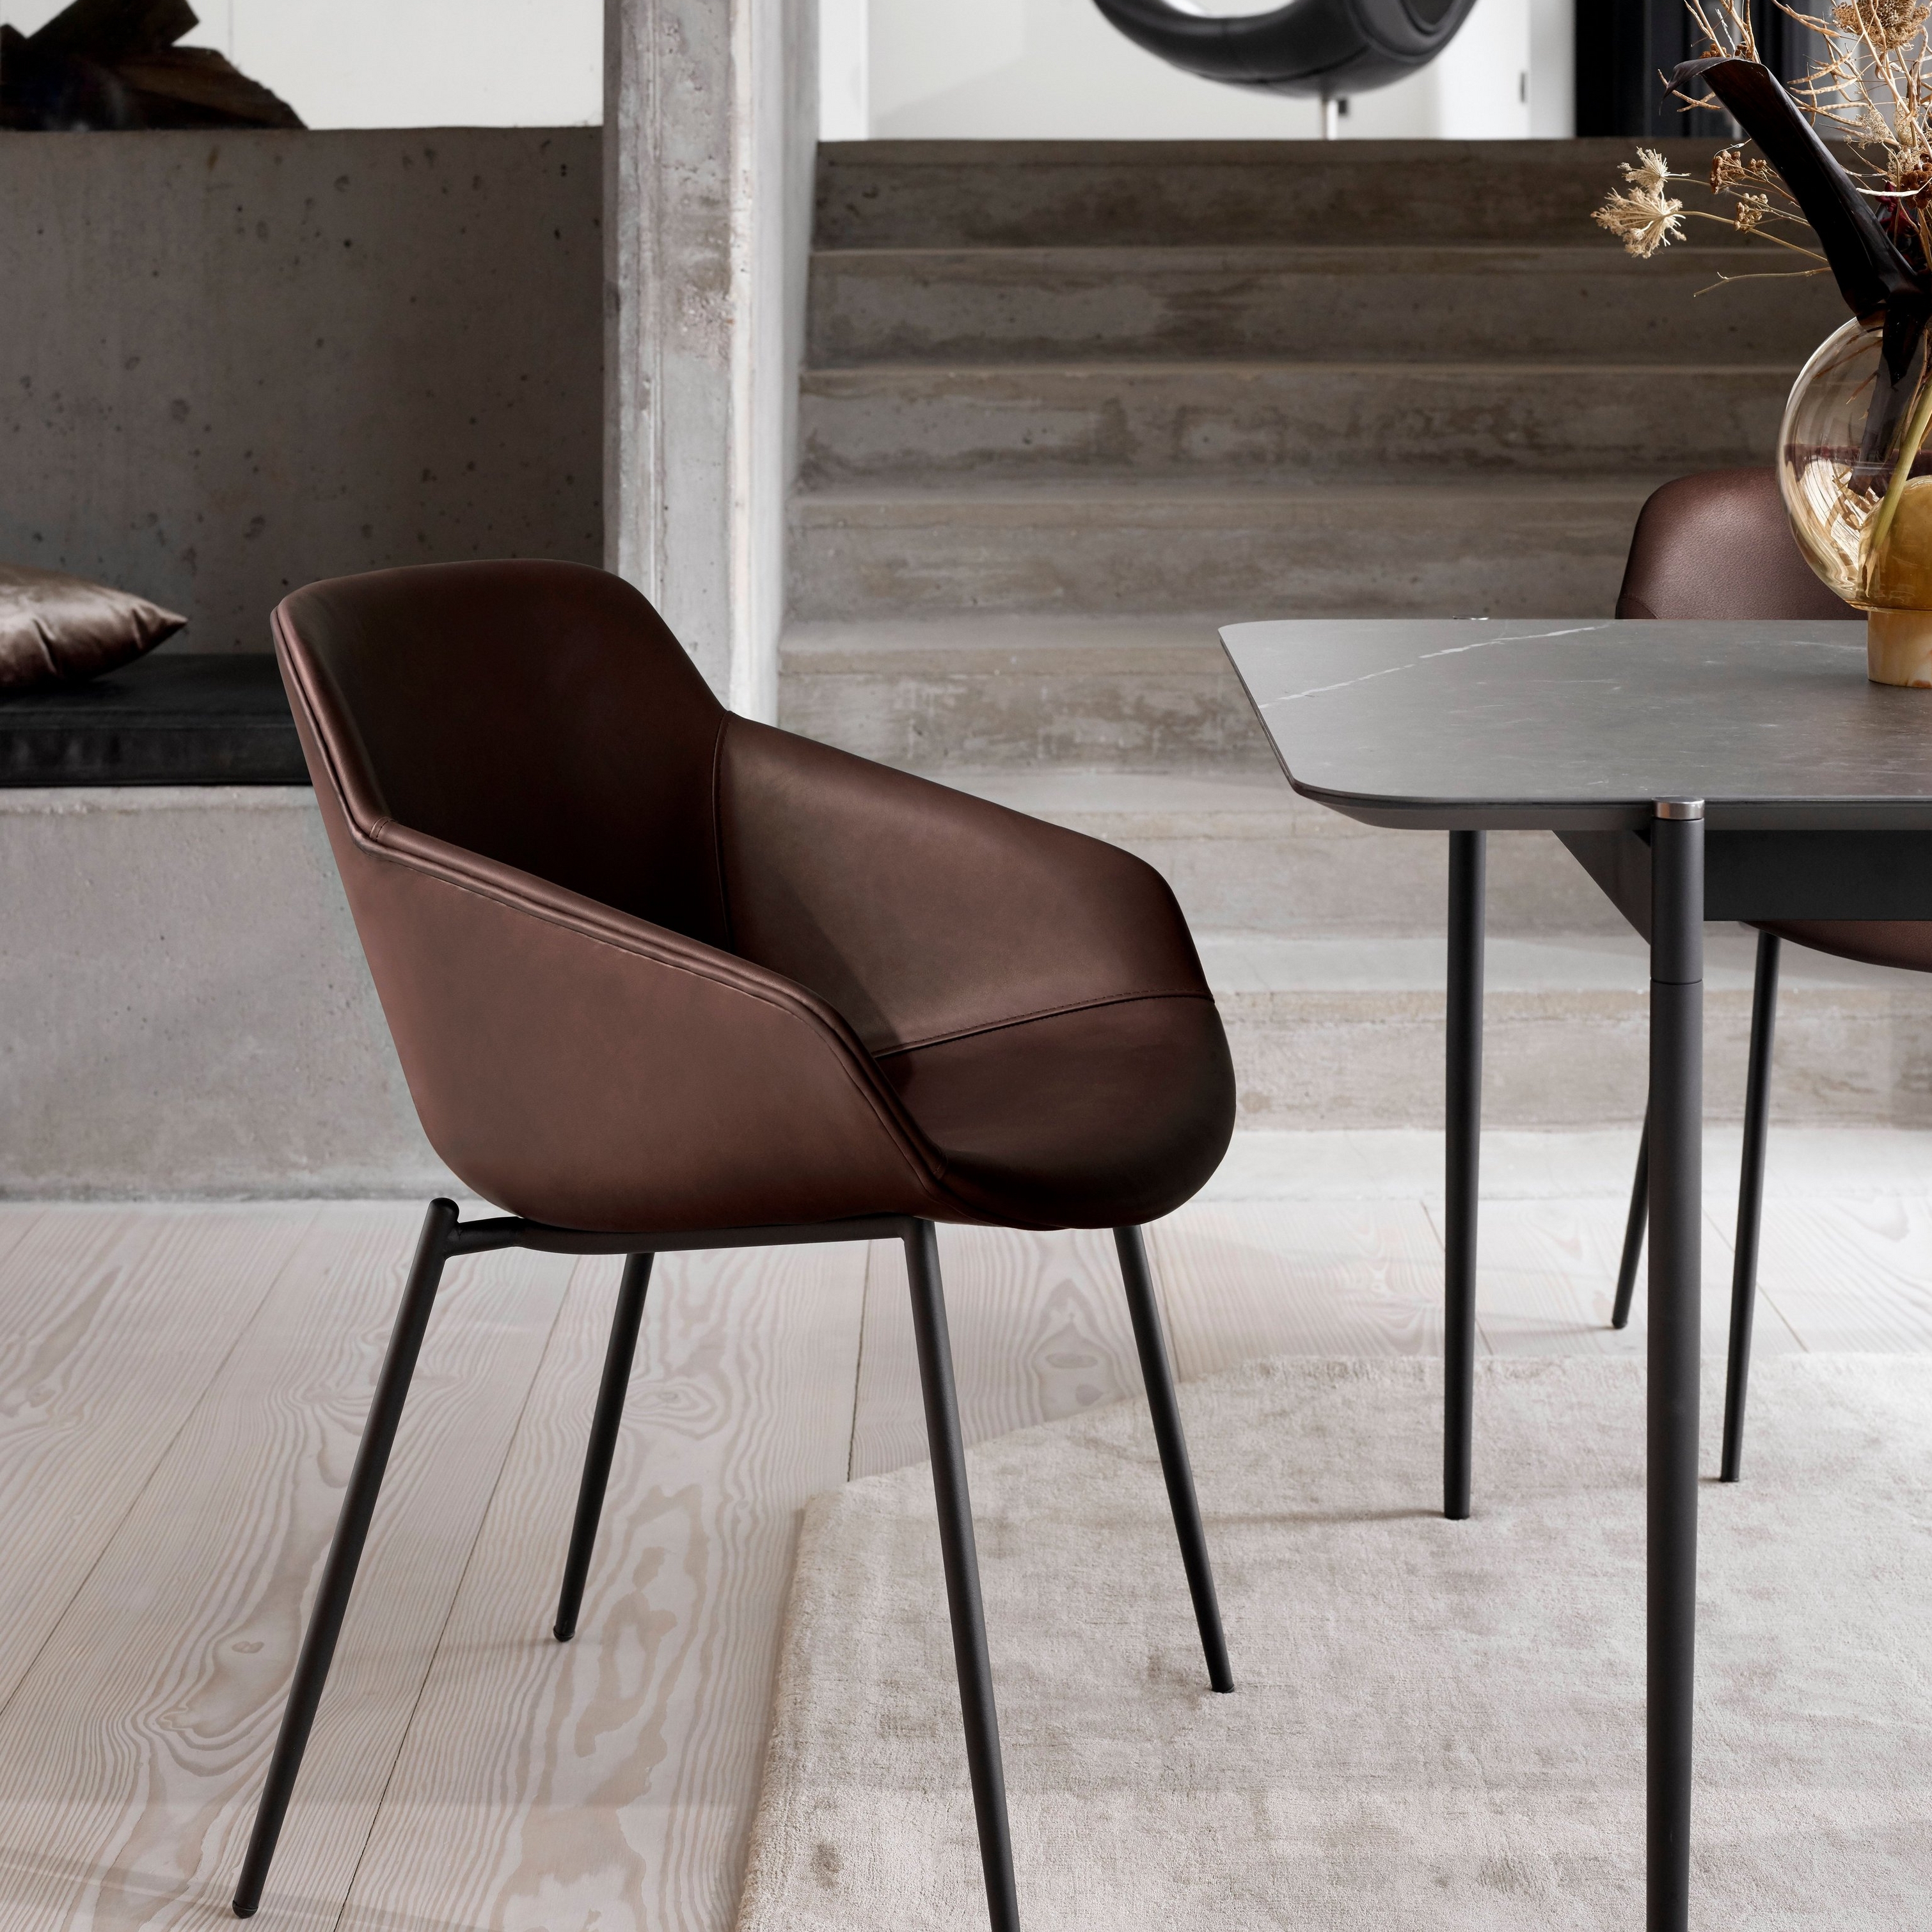 Chaise de salle à manger en cuir avec pieds noirs, près d’une table avec un vase, dans un cadre moderne.